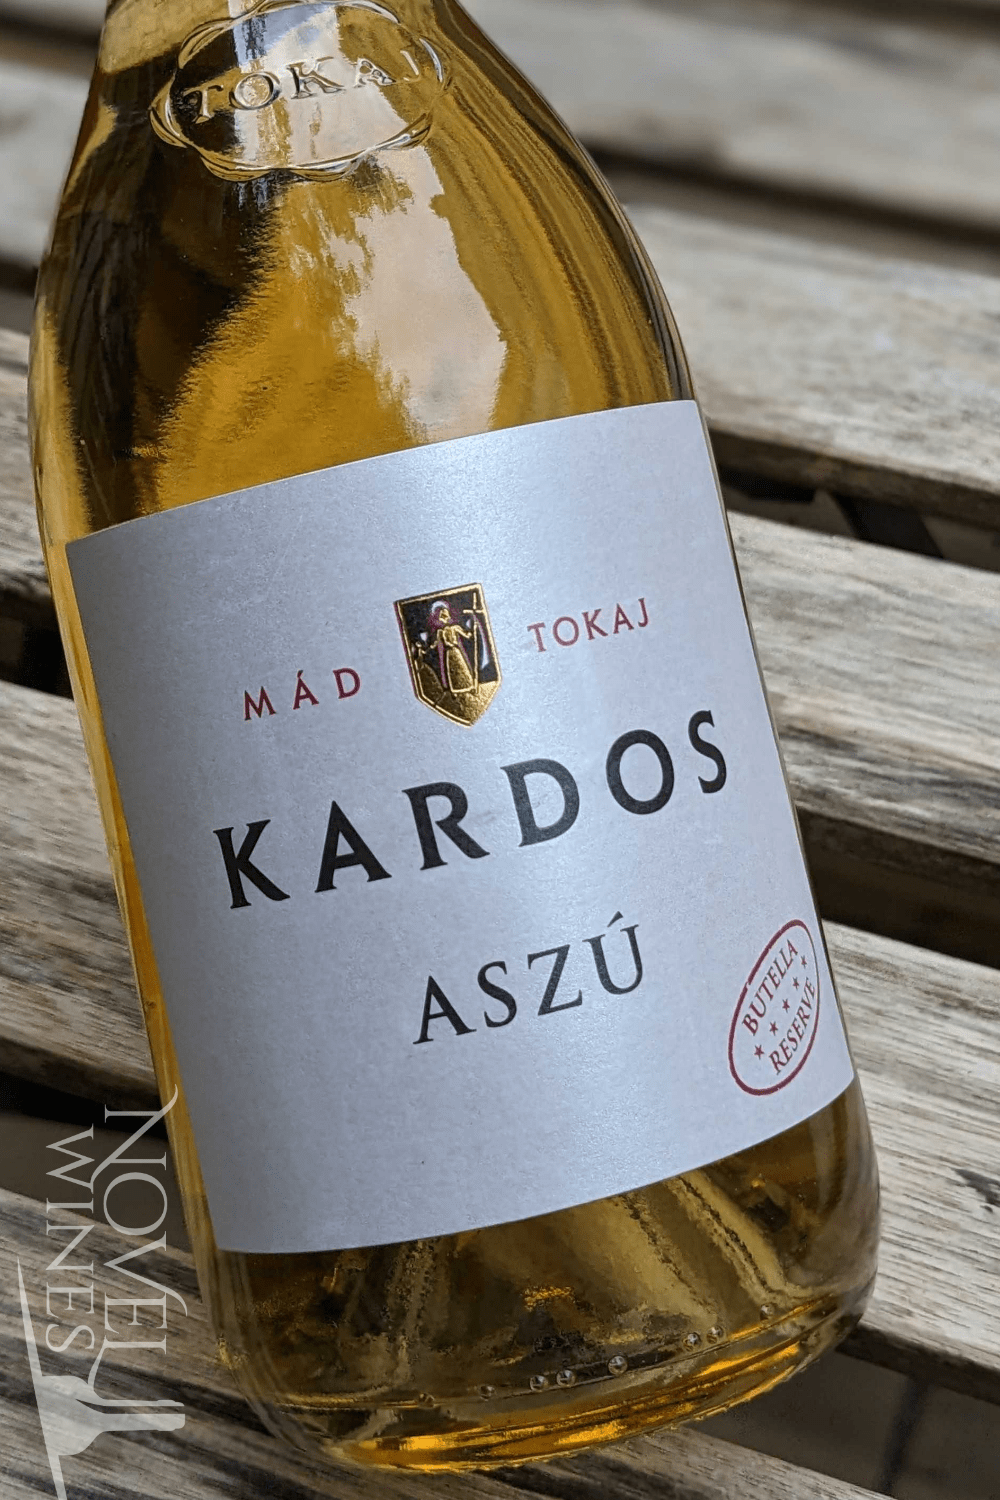 Kardos Dessert Wine Kardos Tokaji Aszu 5 Puttonyos 2017, Hungary - Butella Edition